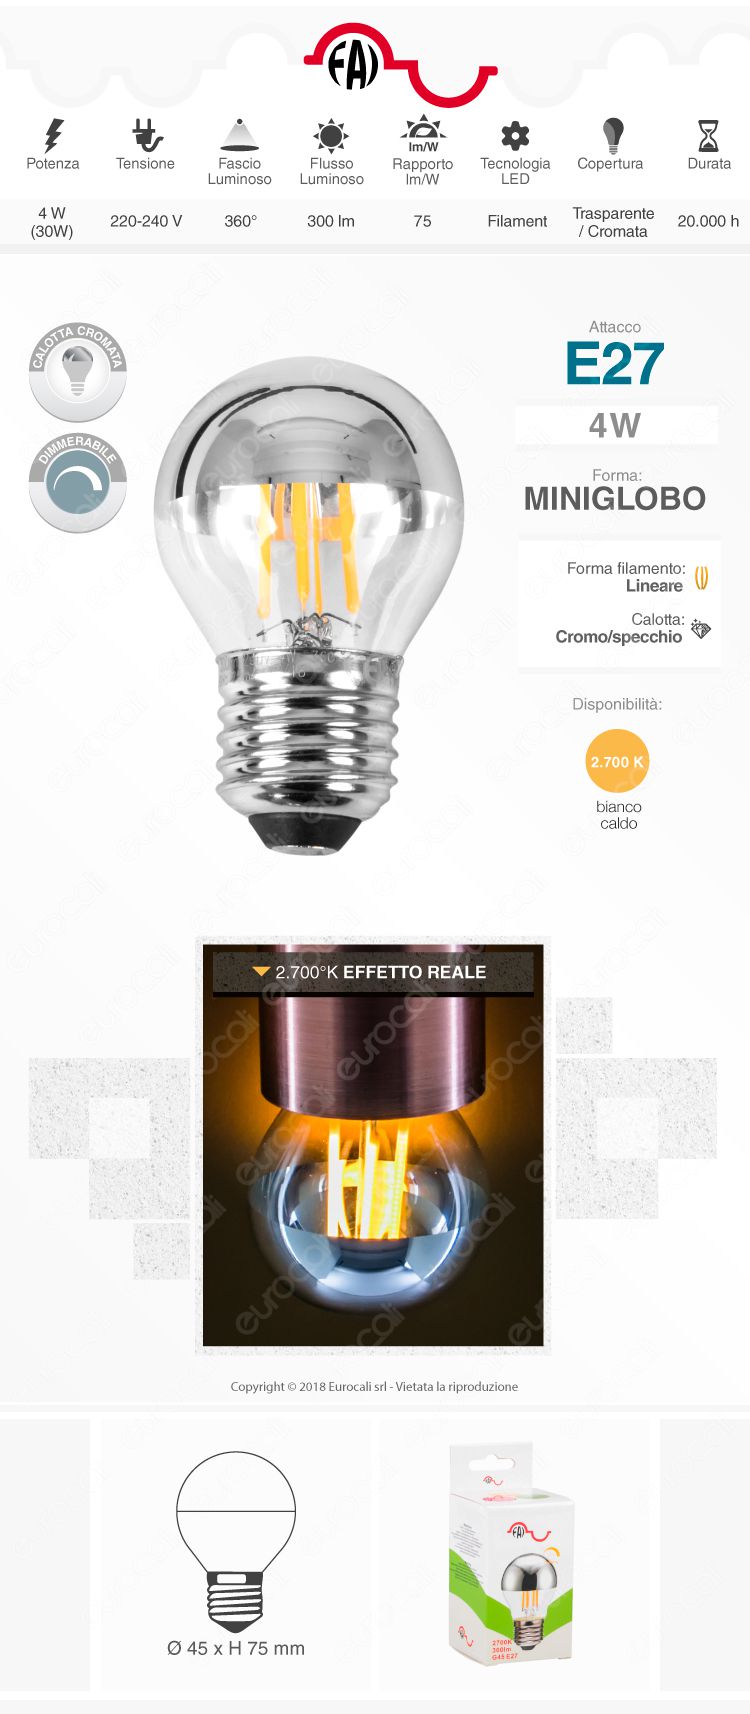 FAI Lampadina E27 Filamenti LED 4W MiniGlobo G45 con Calotta Cromata Dimmerabile - mod. 5260/CA/ARG